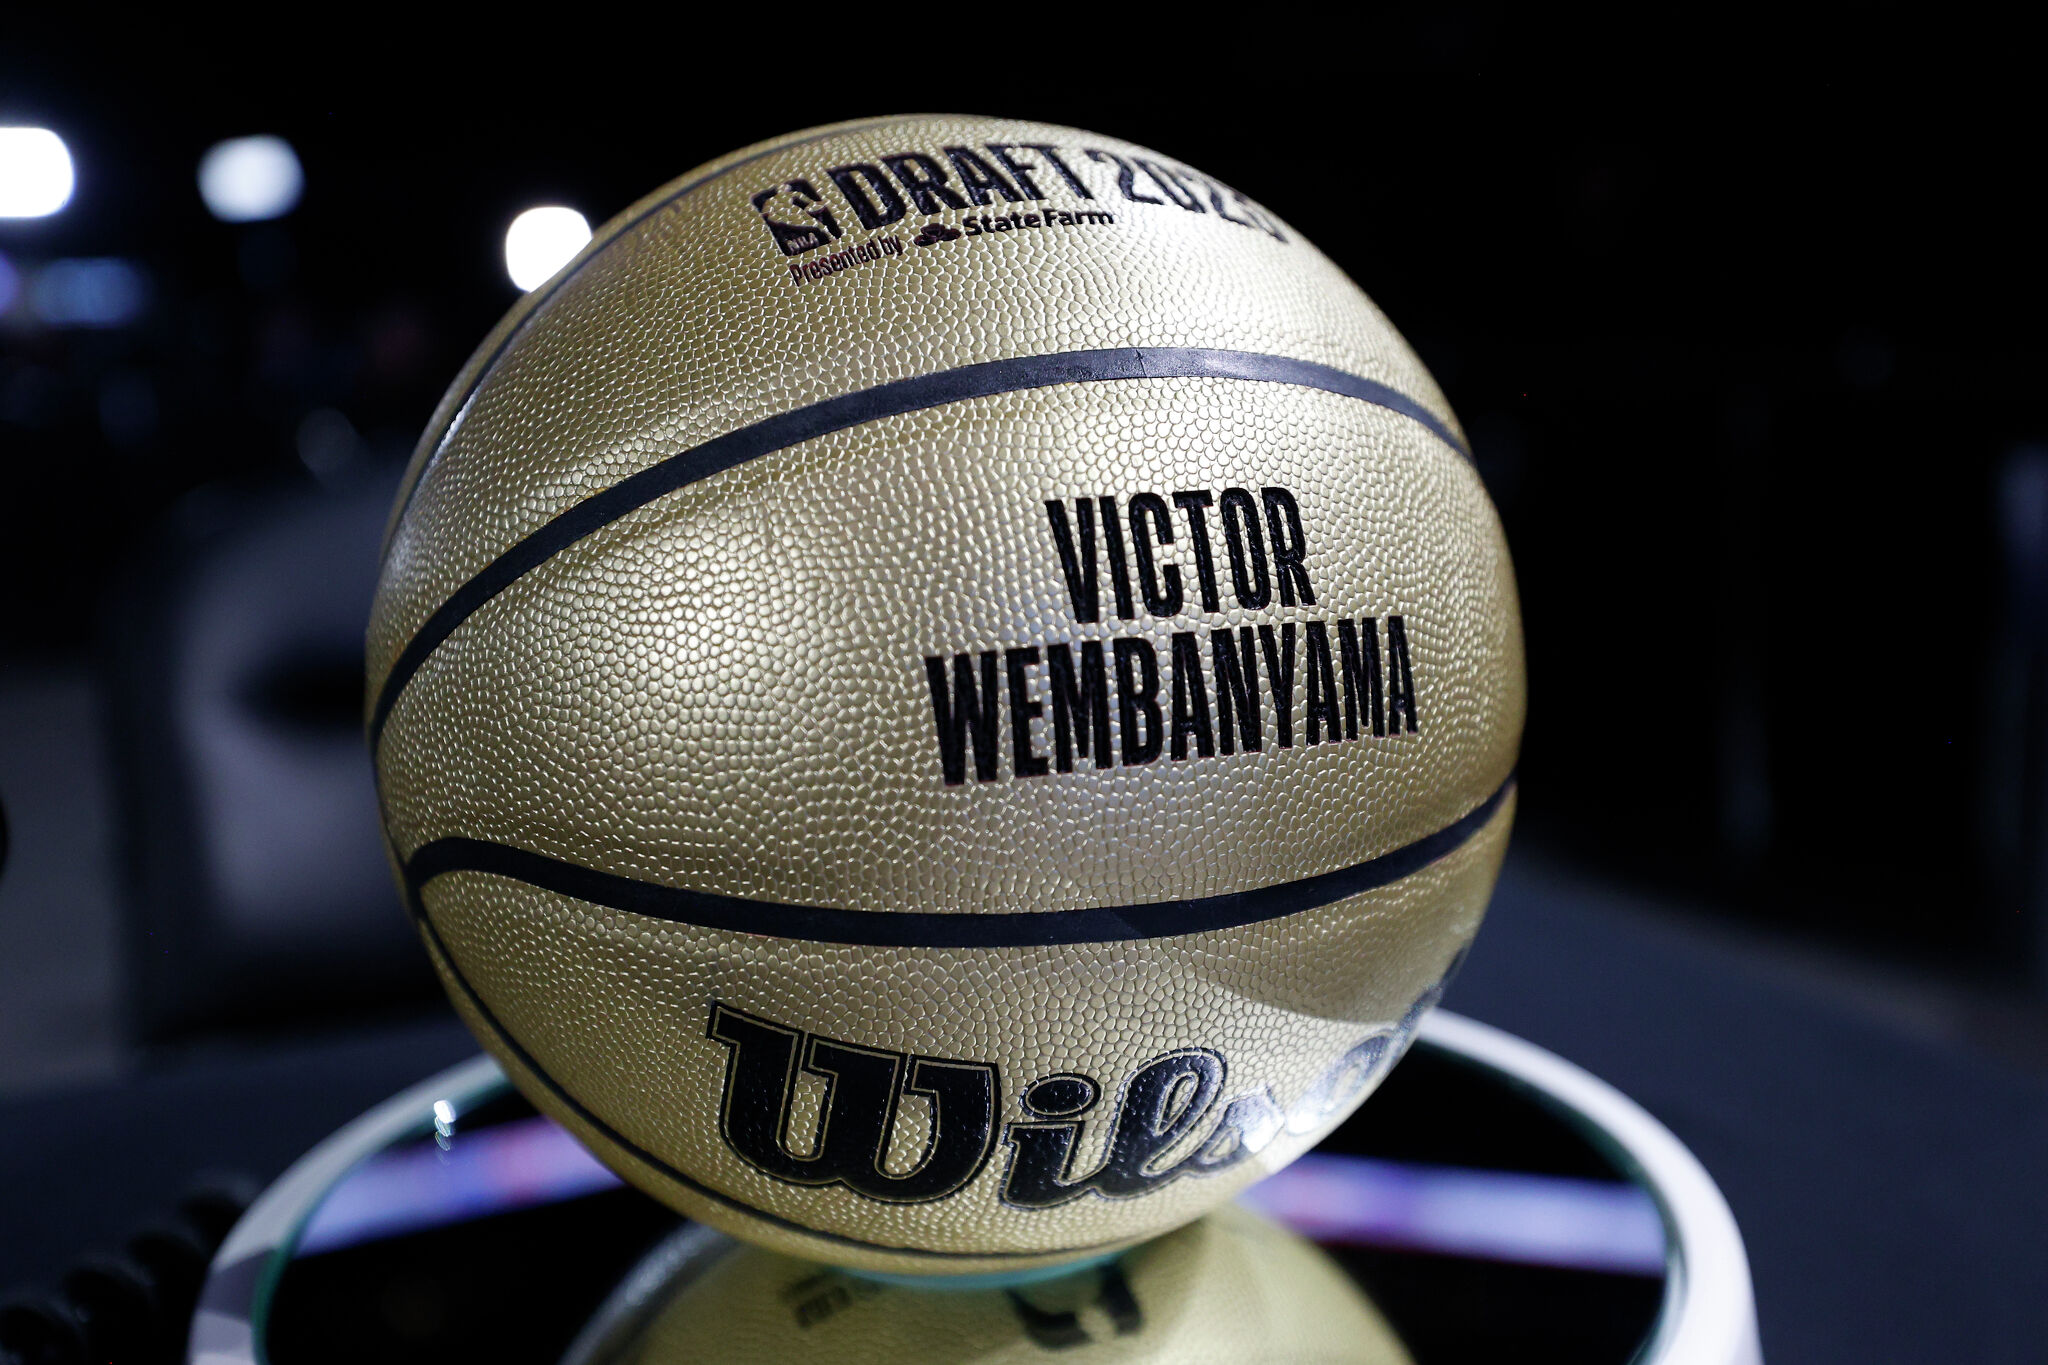 NBA draft 2023: Victor Wembanyama selected at No 1 by San Antonio Spurs –  as it happened, NBA